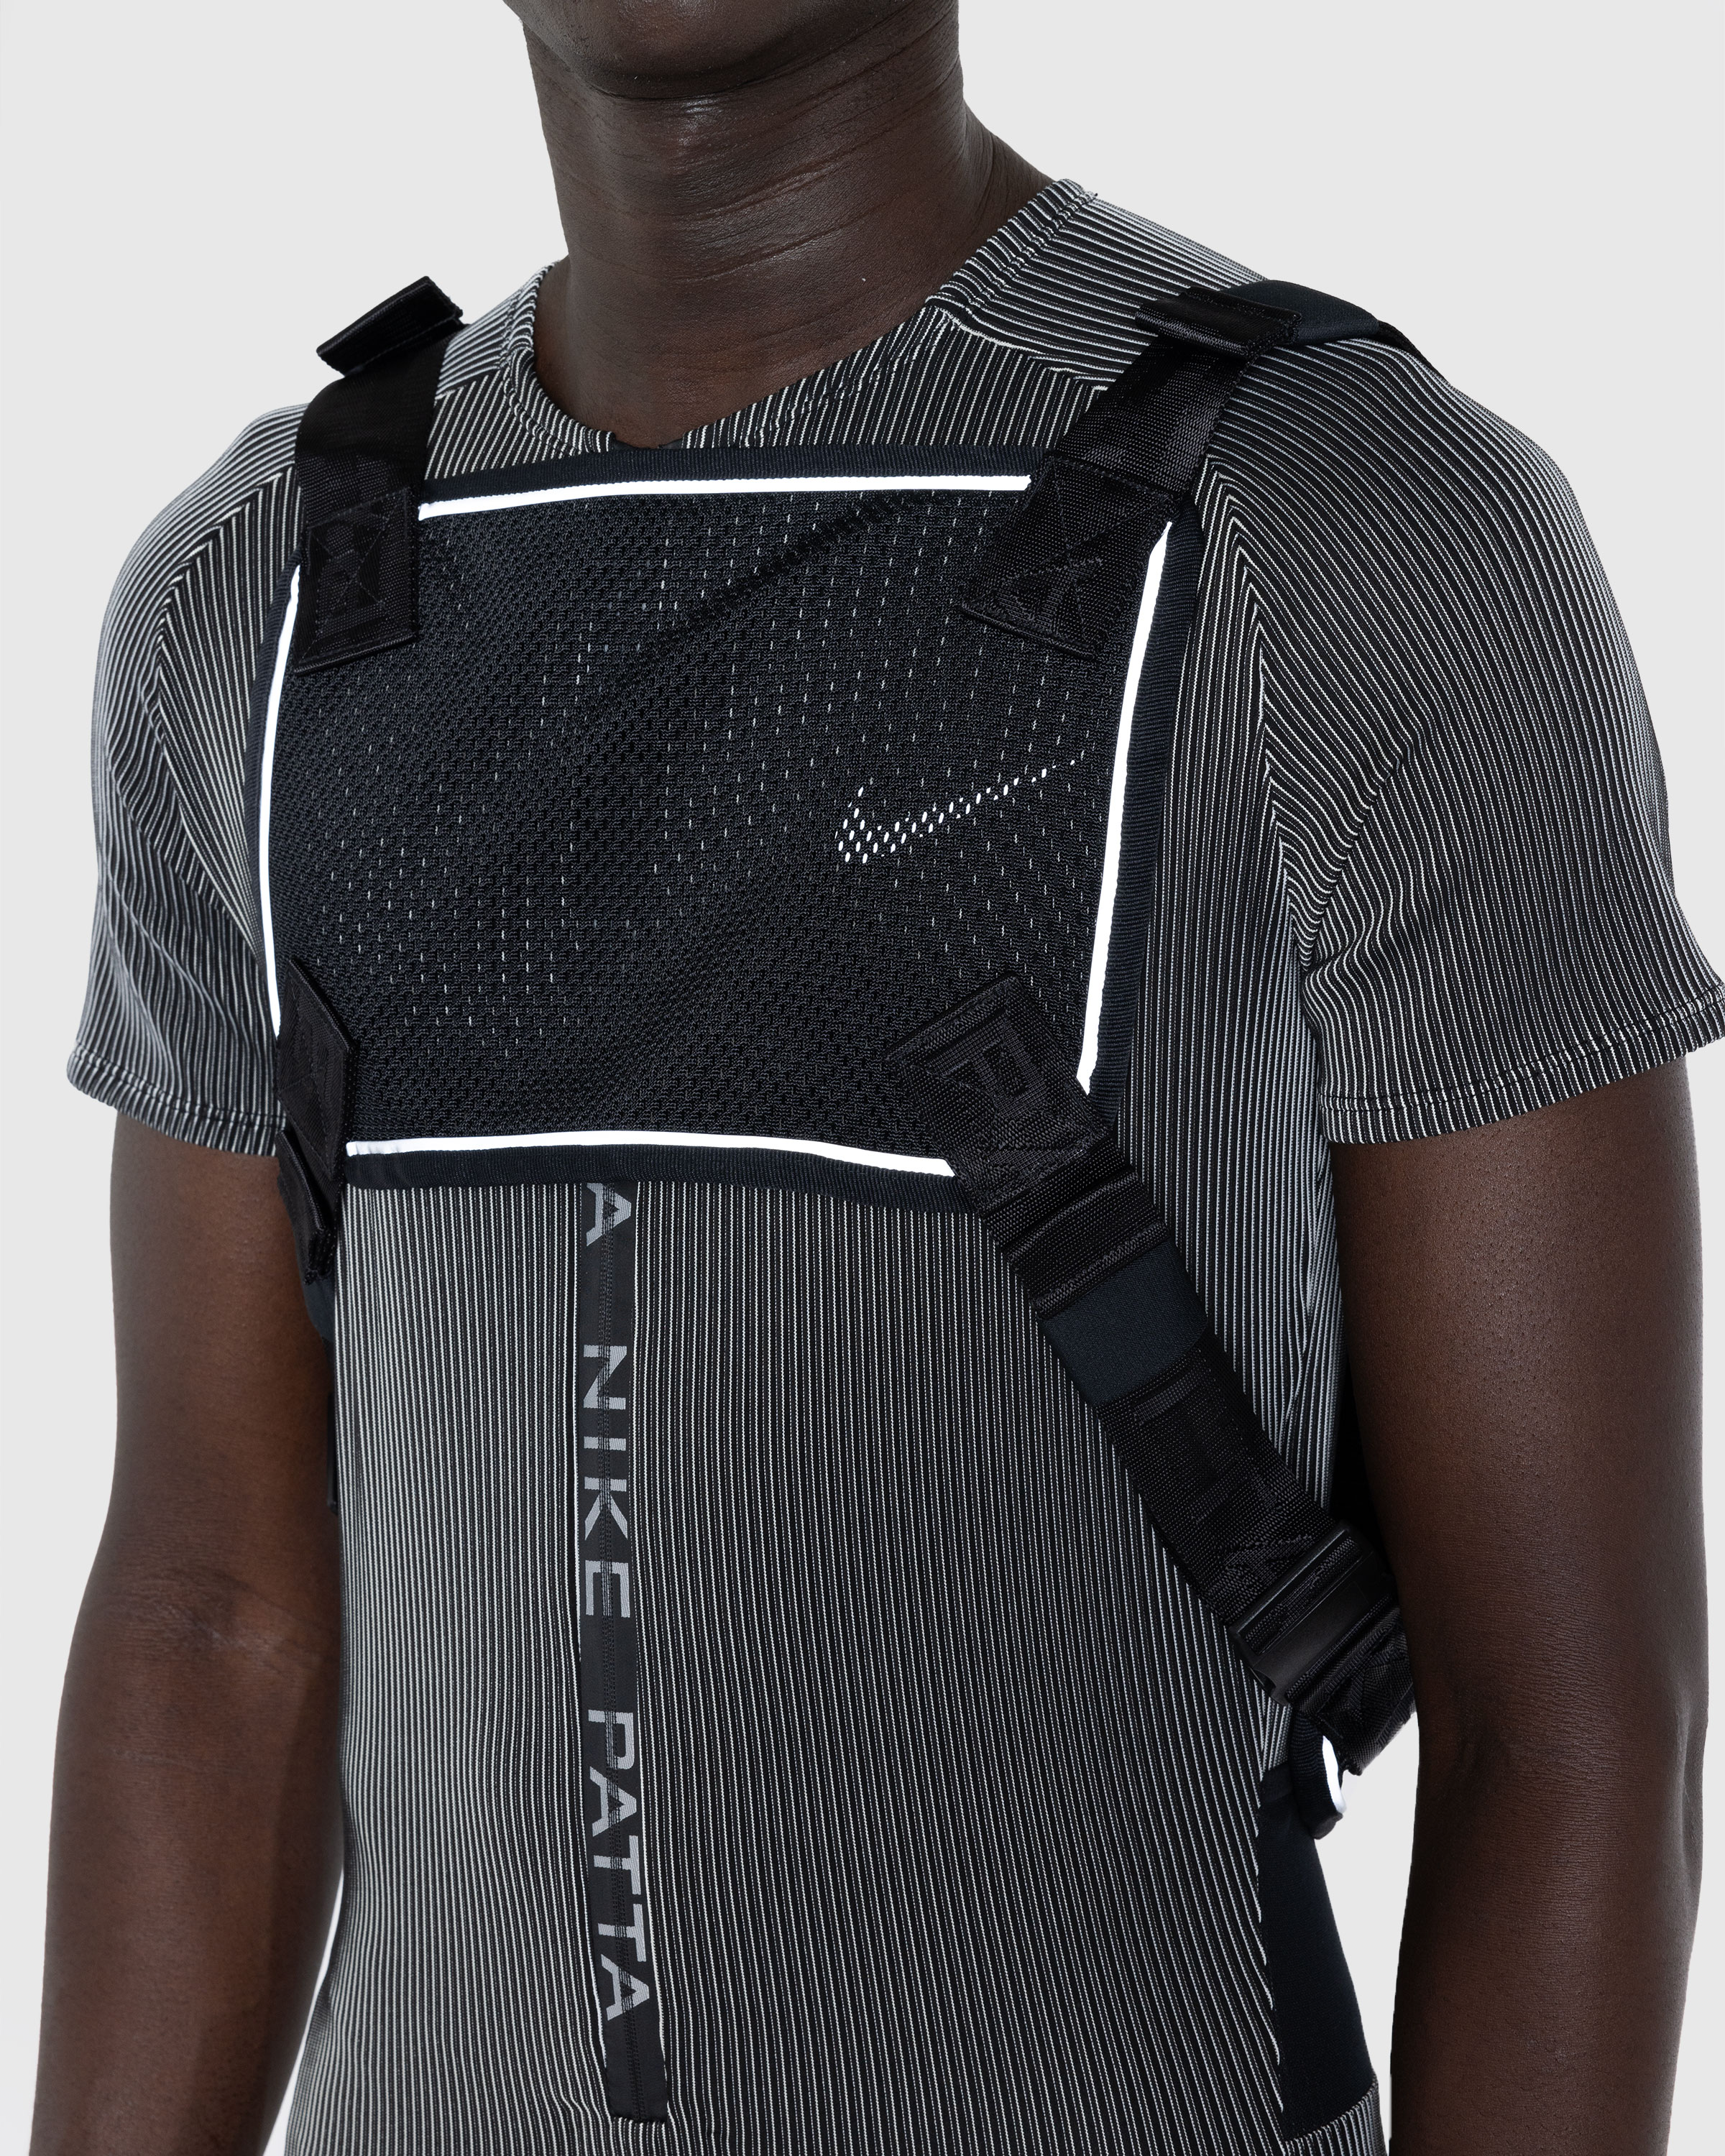 Nike x Patta – Rig Vest Black - Shoulder Bags - Black - Image 6